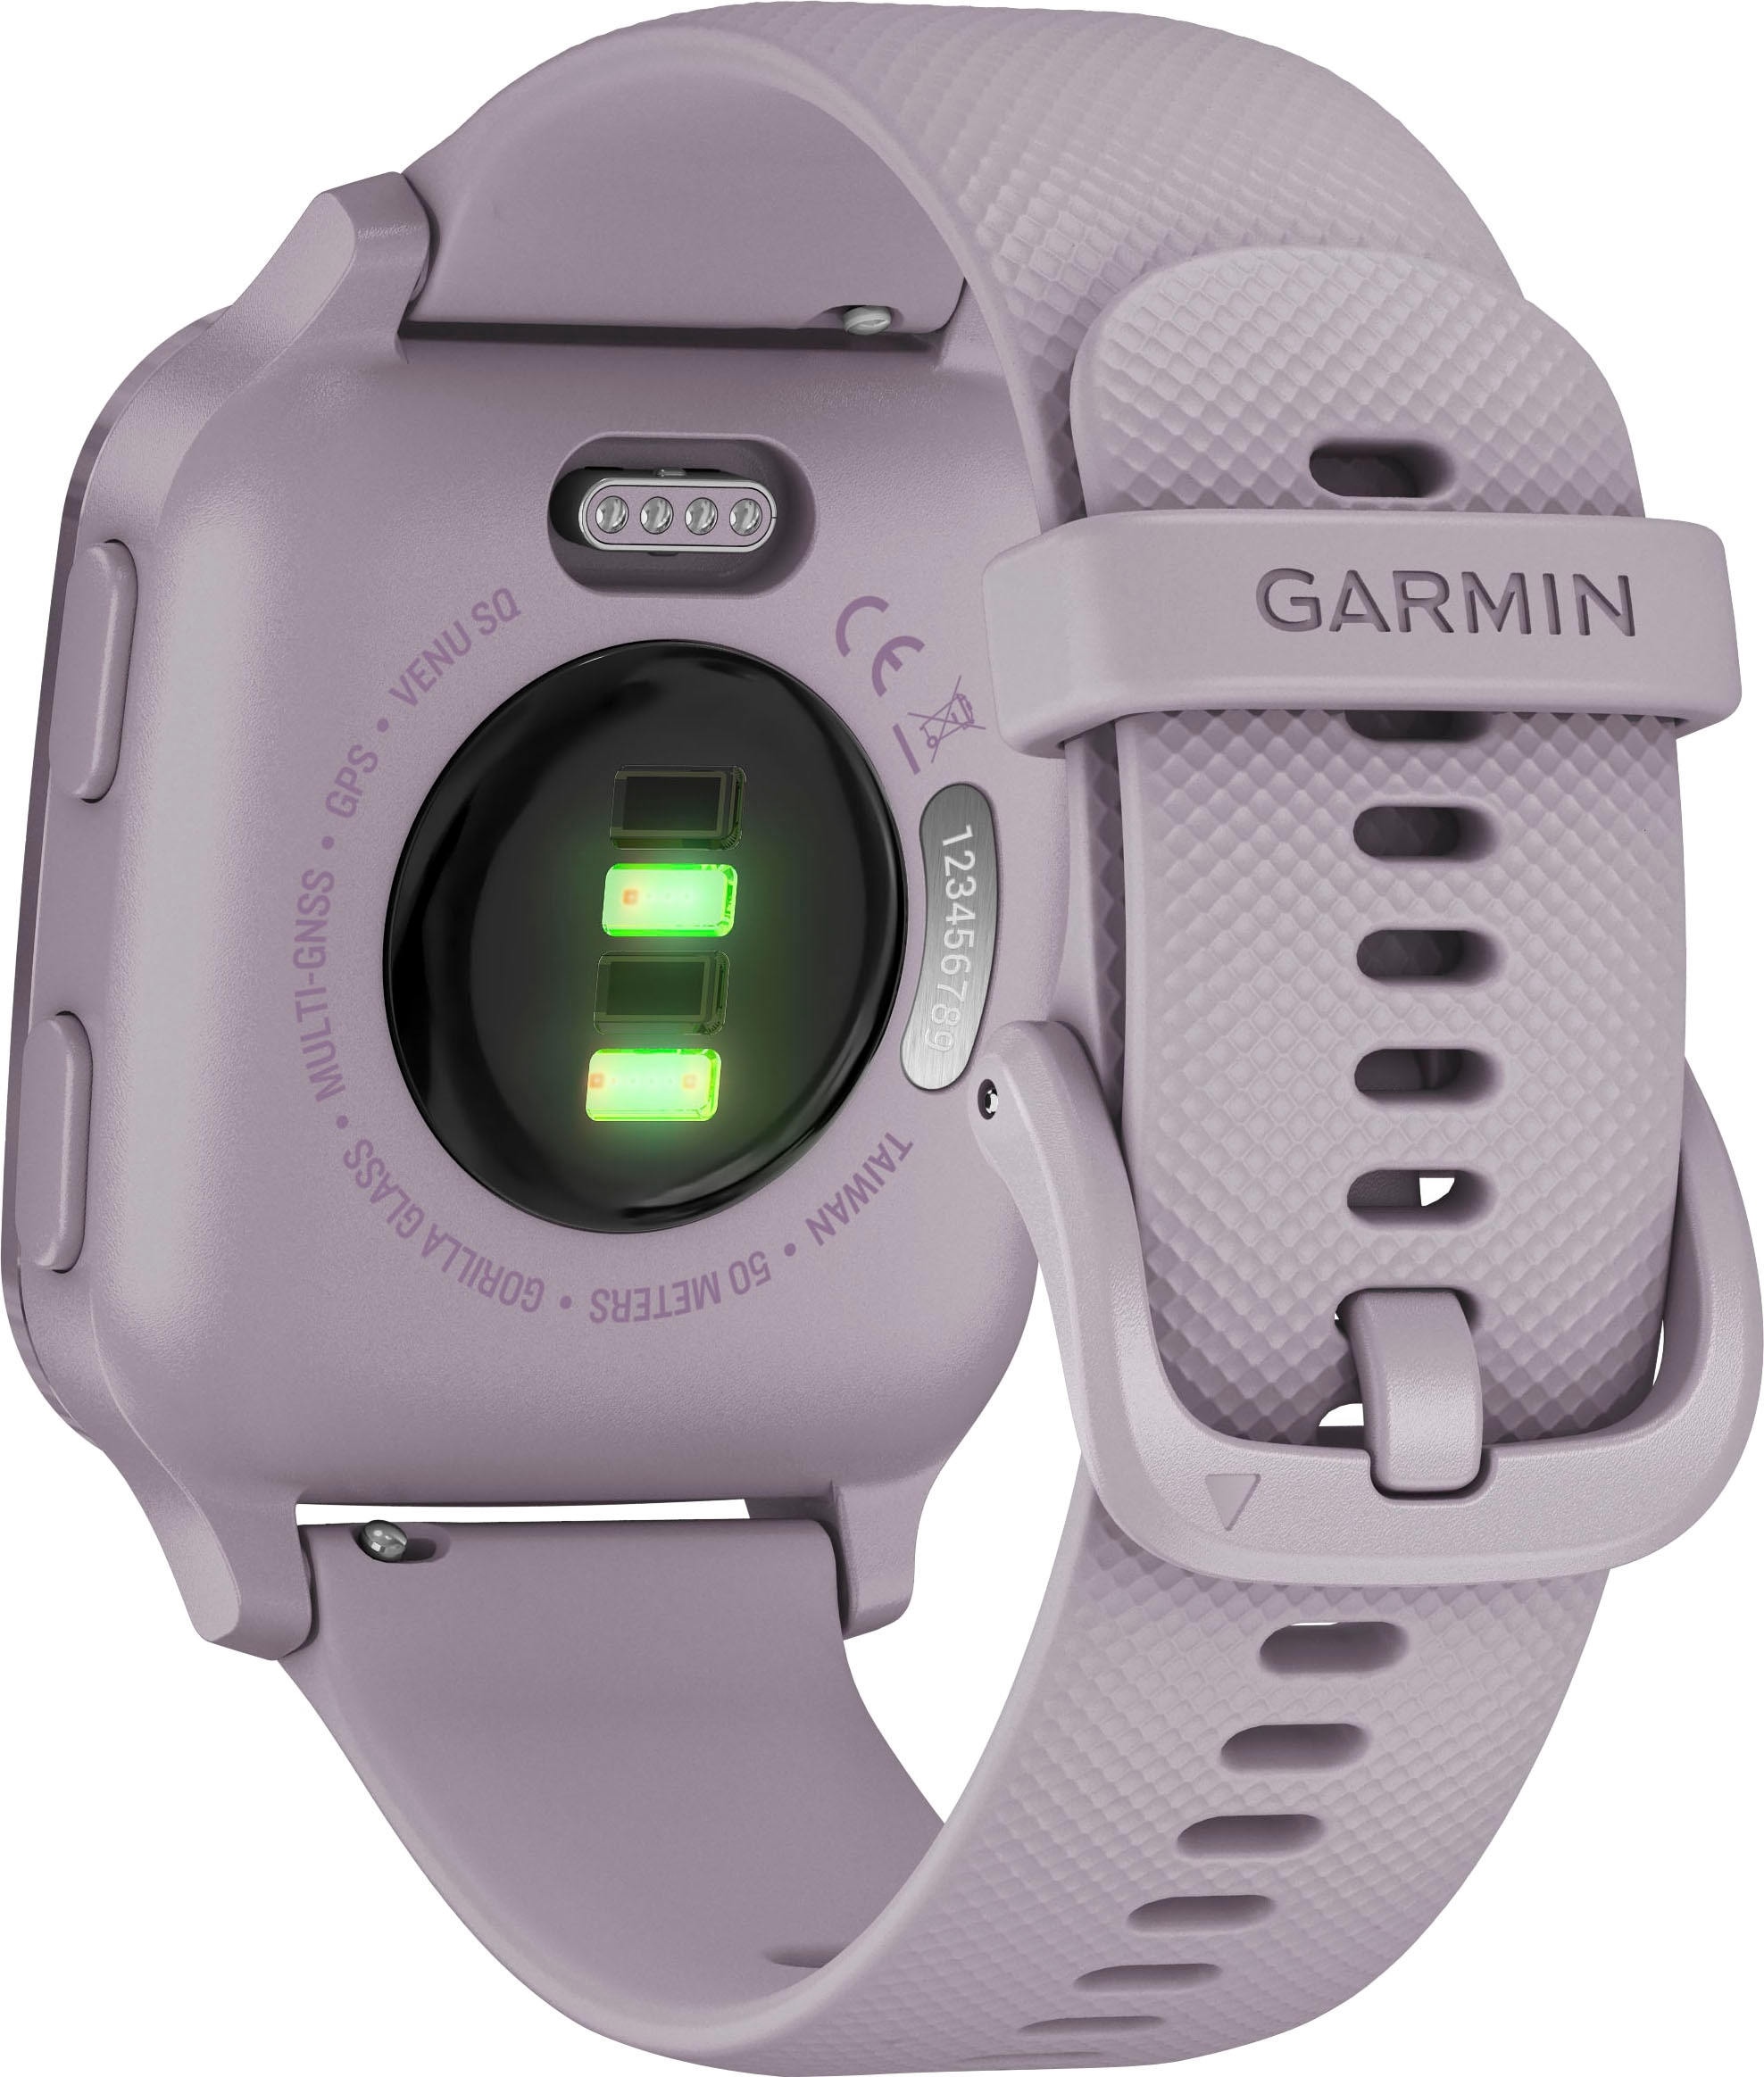 »VENU Garmin Smartwatch online kaufen SQ«